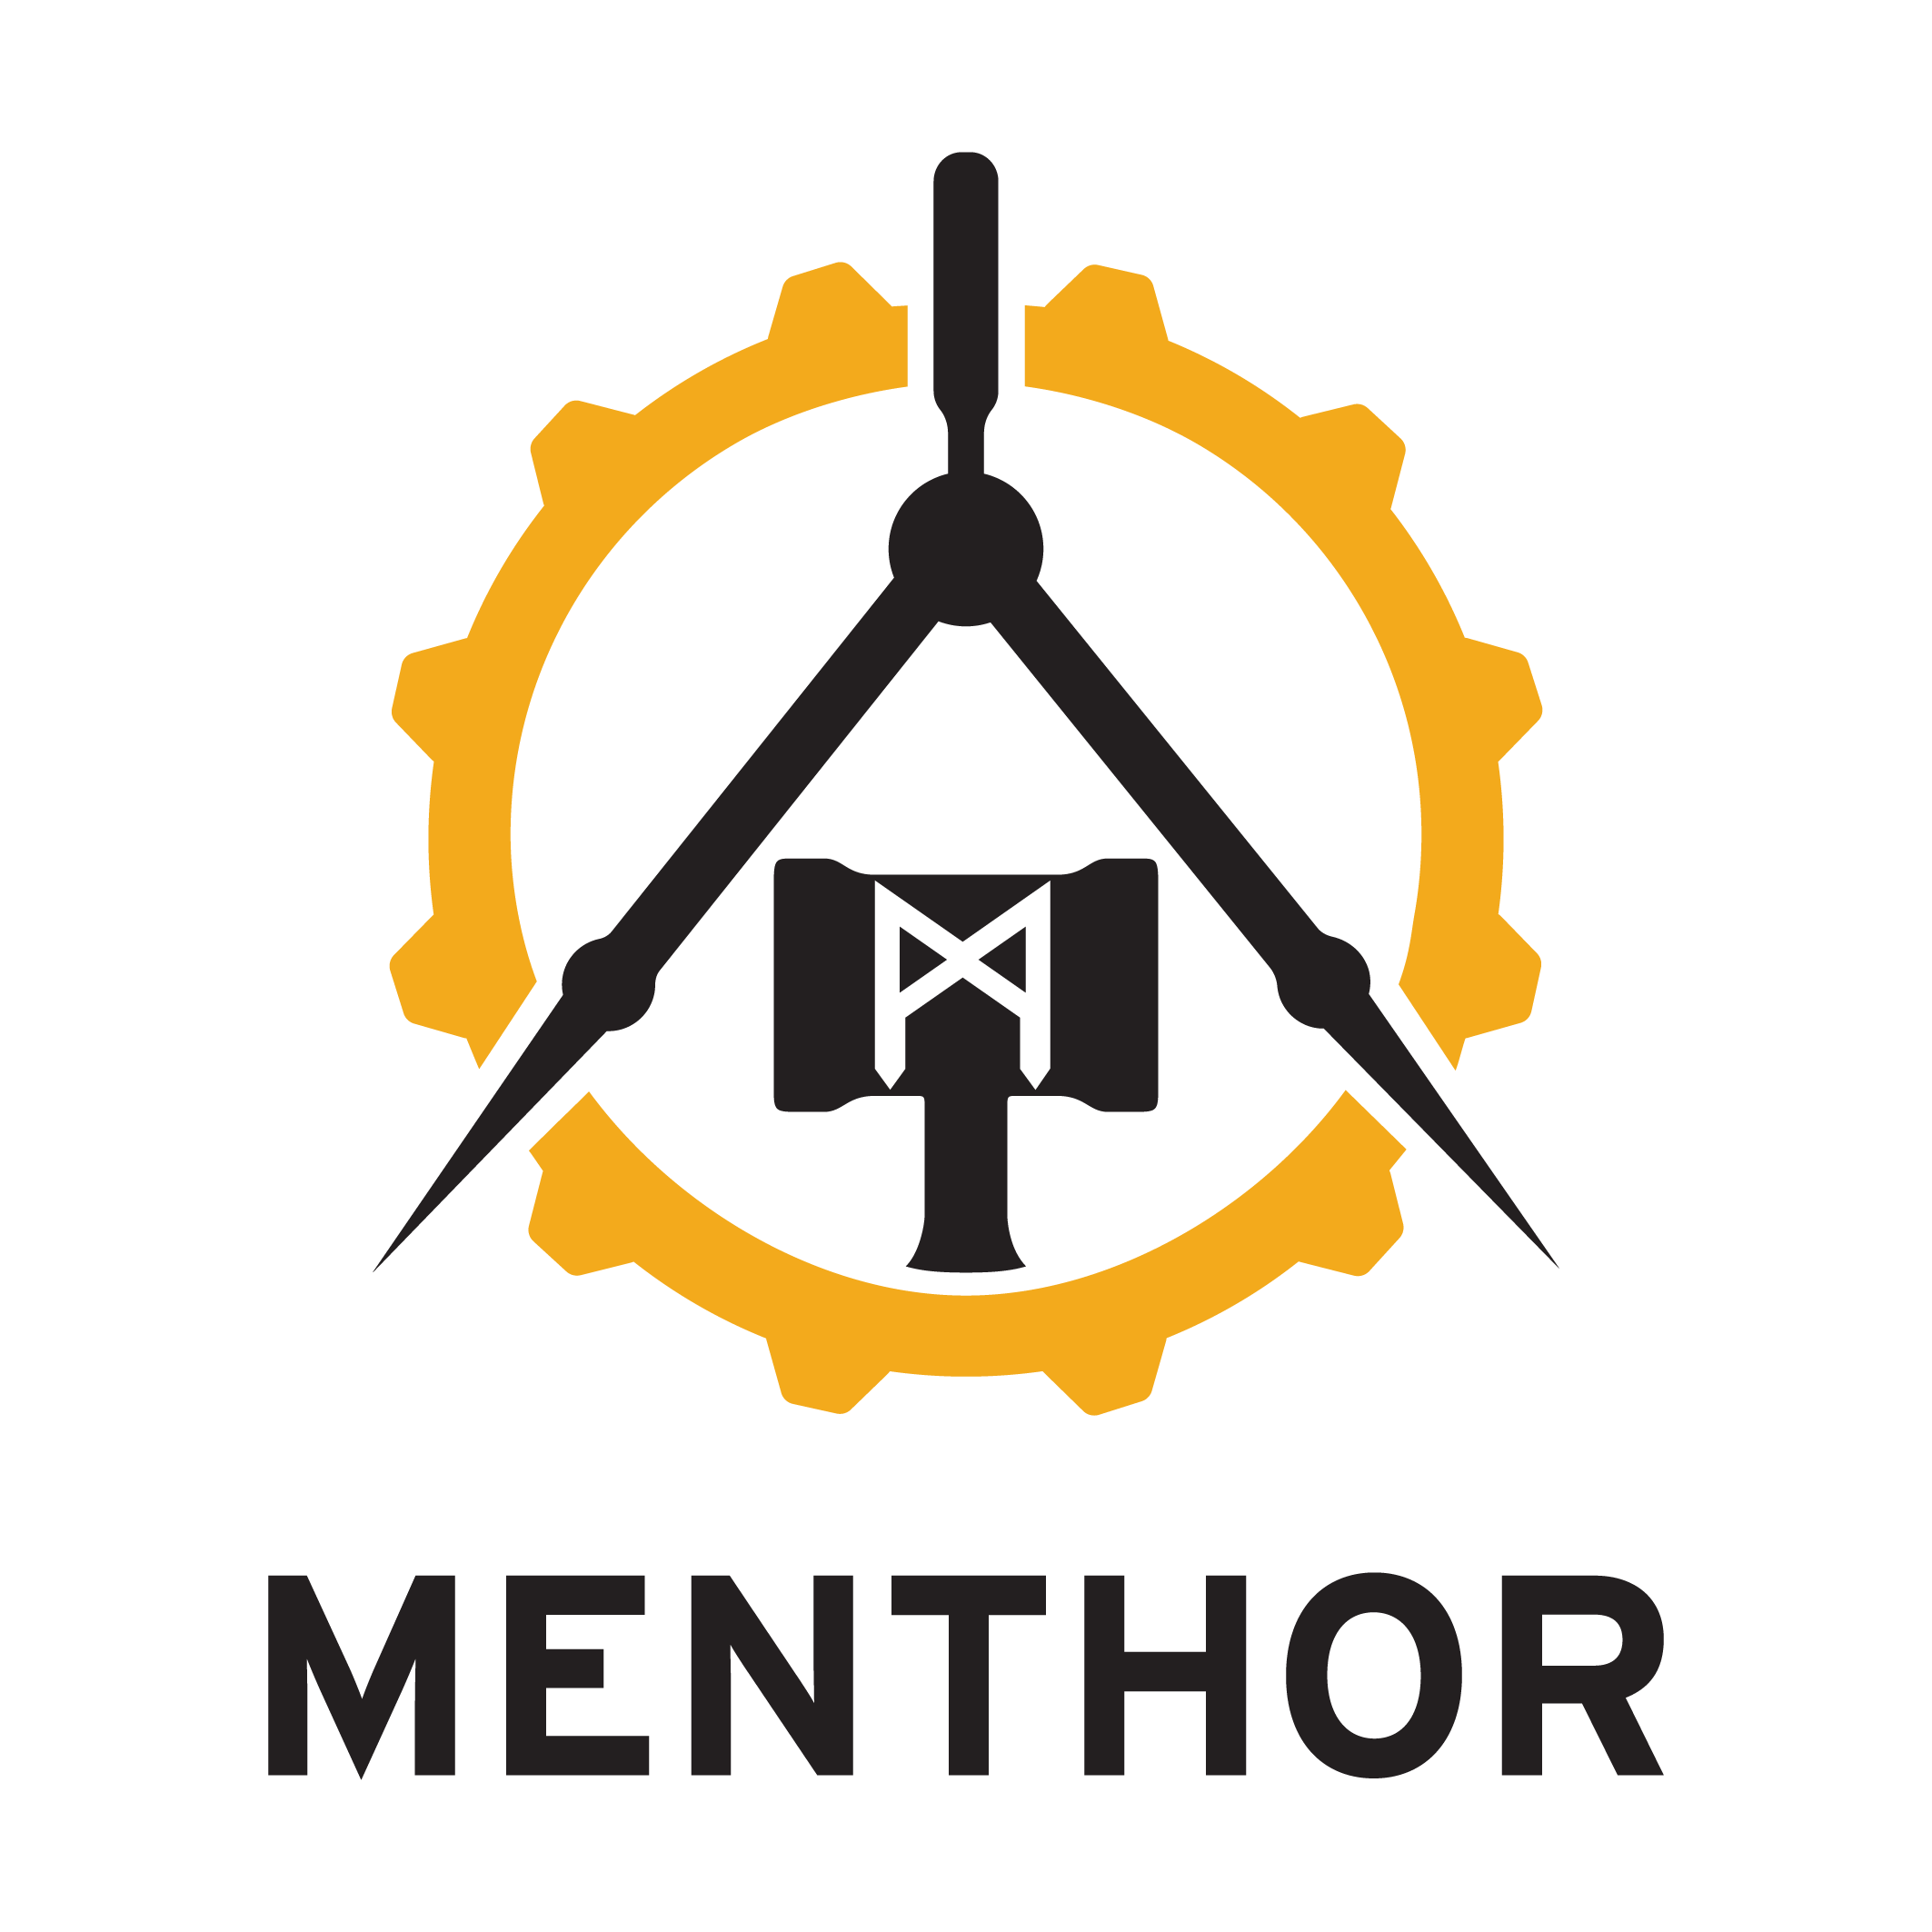 Menthor